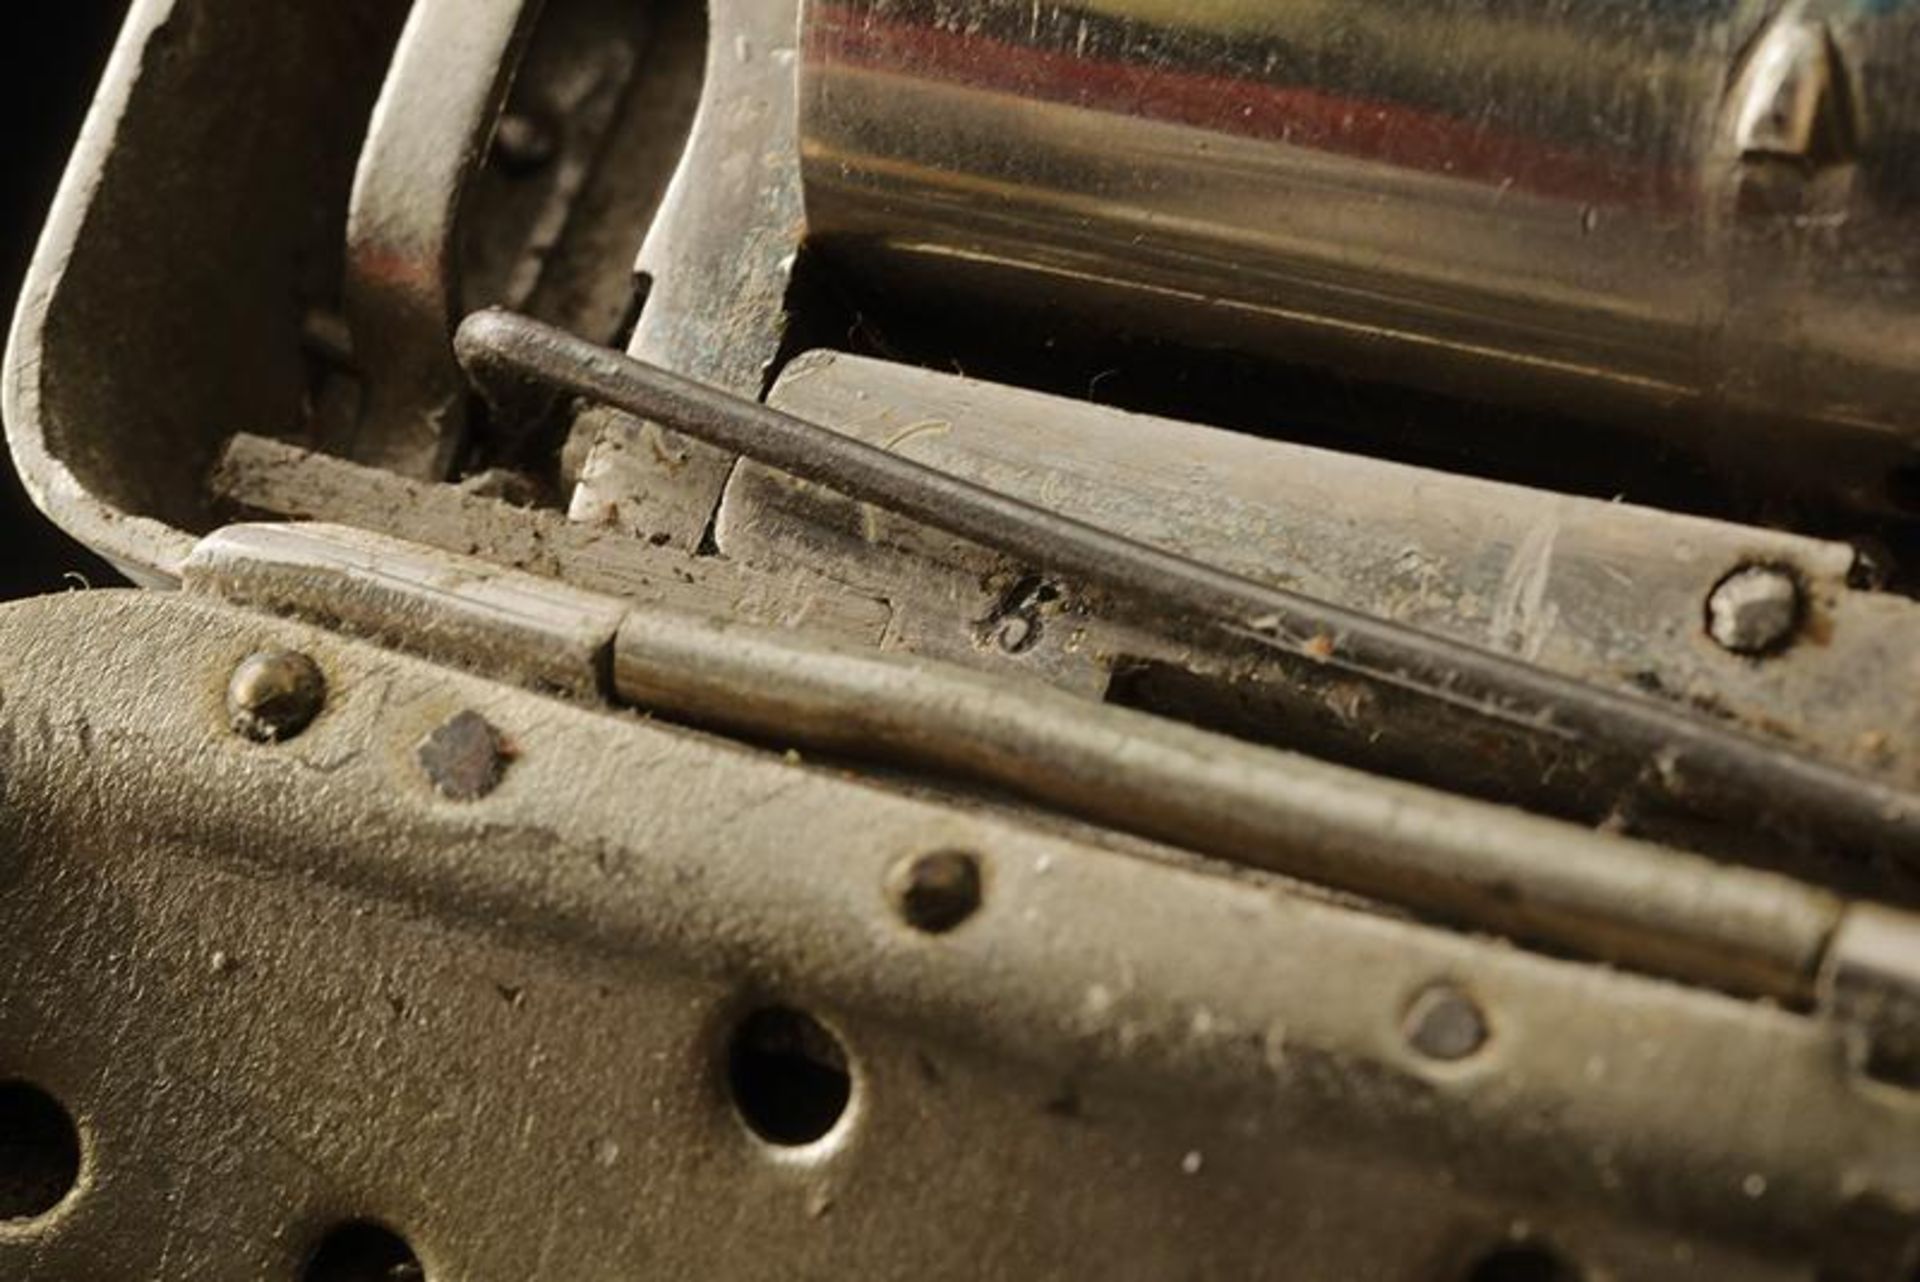 A very scarce Frankenau pin-fire pepperbox revolver in a purse - Bild 7 aus 10